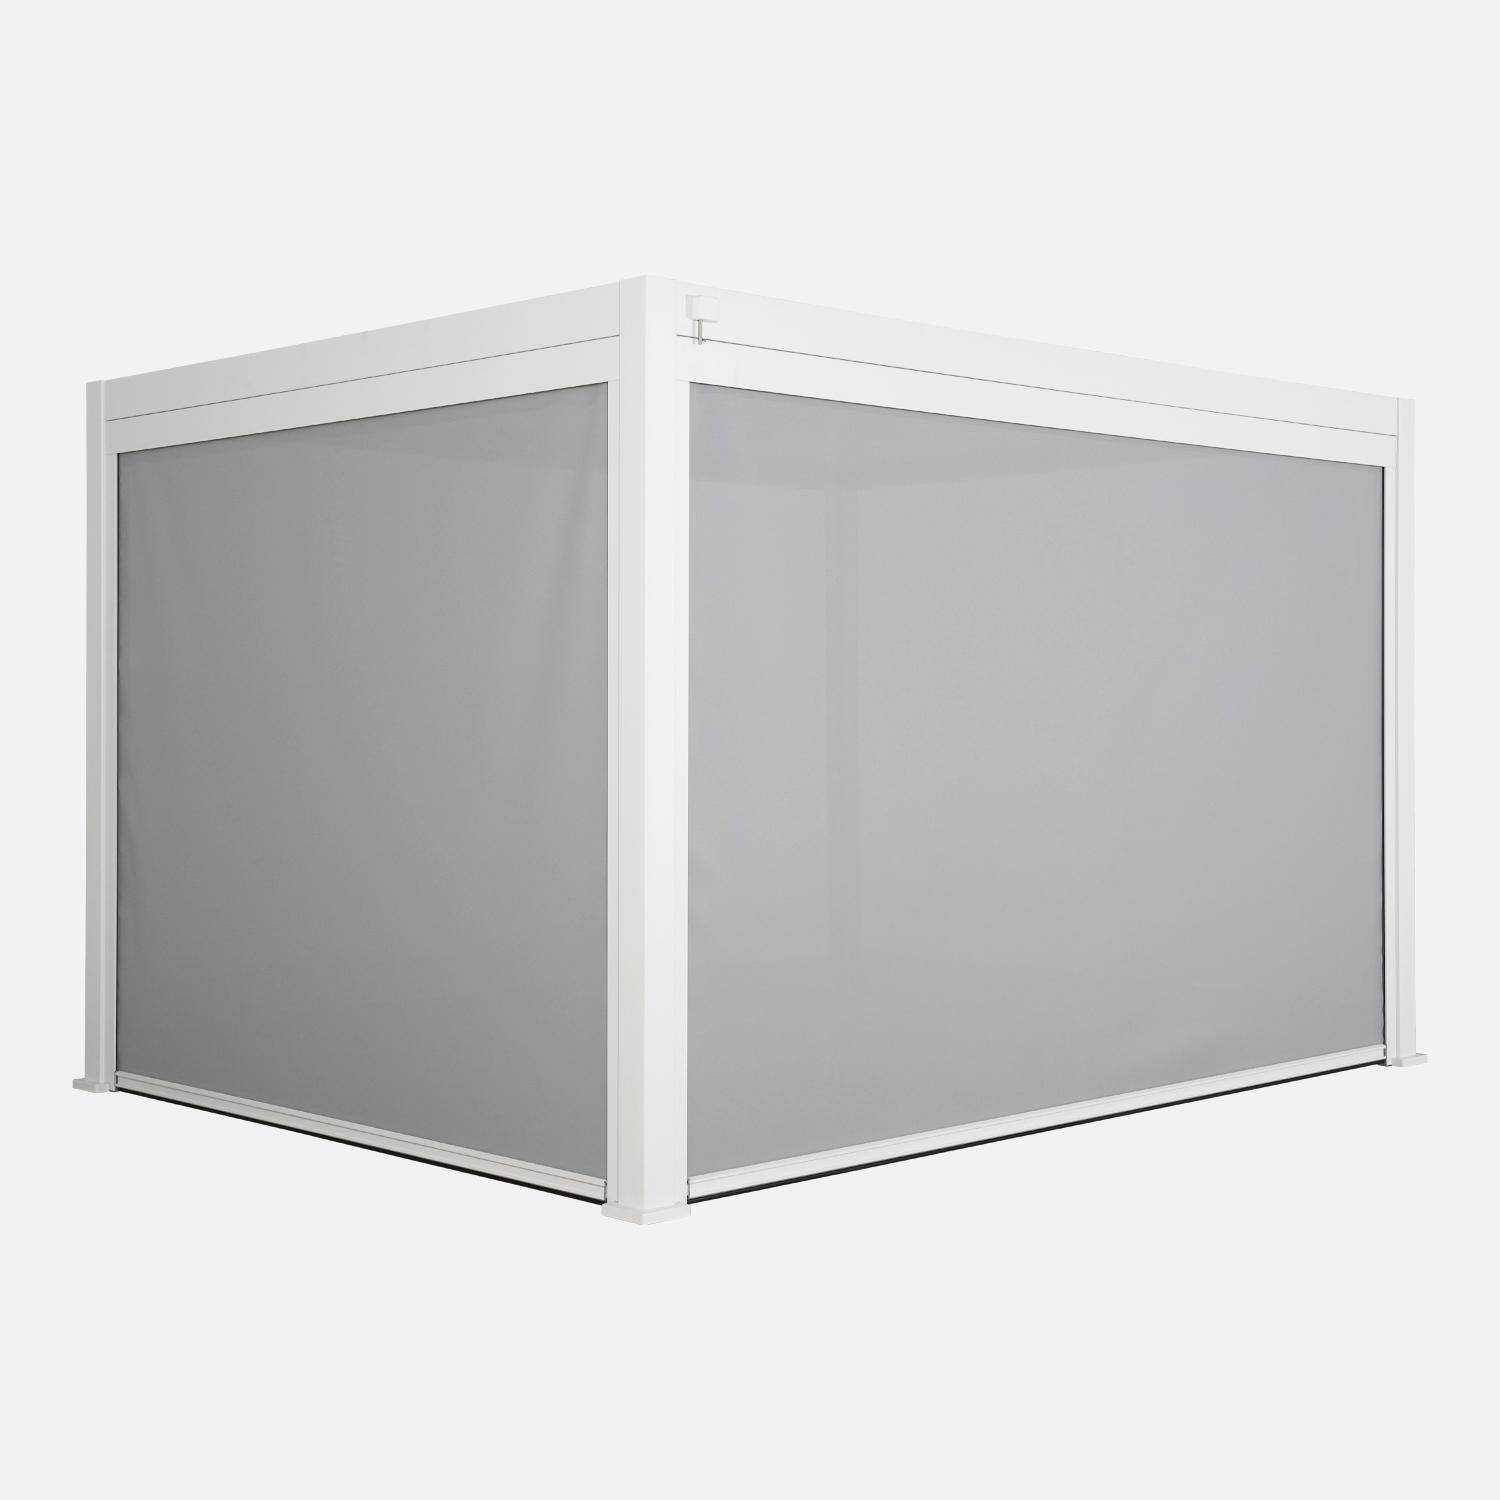 Pergola Bioclimatique blanche 300 x 400cm, aluminium à lames orientables + store 300cm + store 400cm,sweeek,Photo2